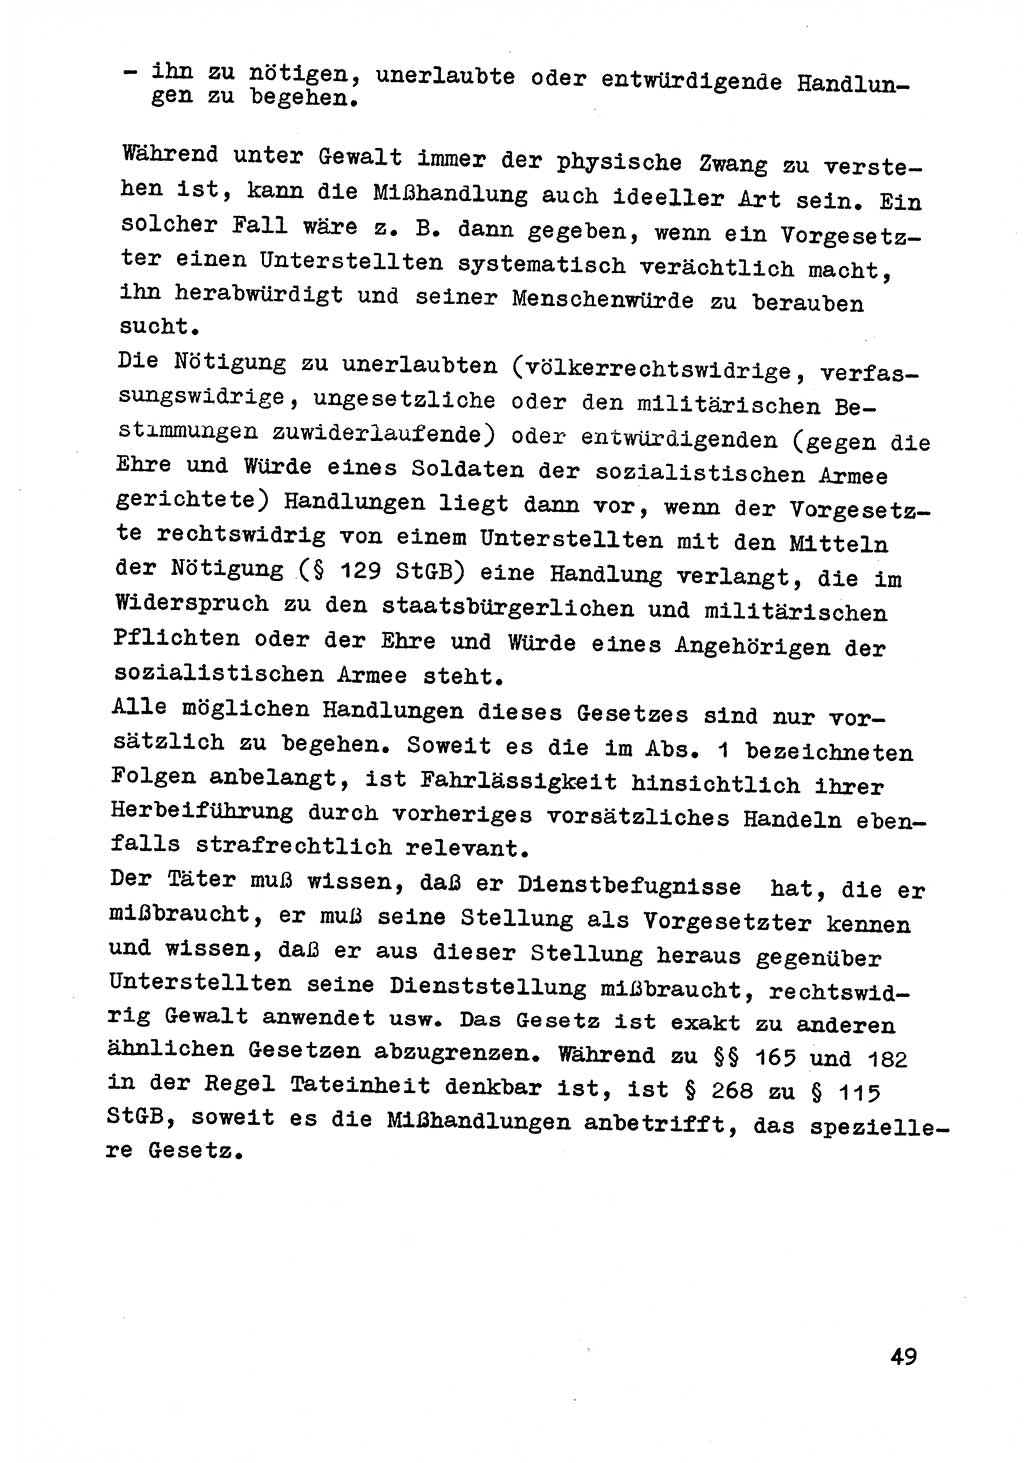 Strafrecht der DDR (Deutsche Demokratische Republik), Besonderer Teil, Lehrmaterial, Heft 9 1969, Seite 49 (Strafr. DDR BT Lehrmat. H. 9 1969, S. 49)